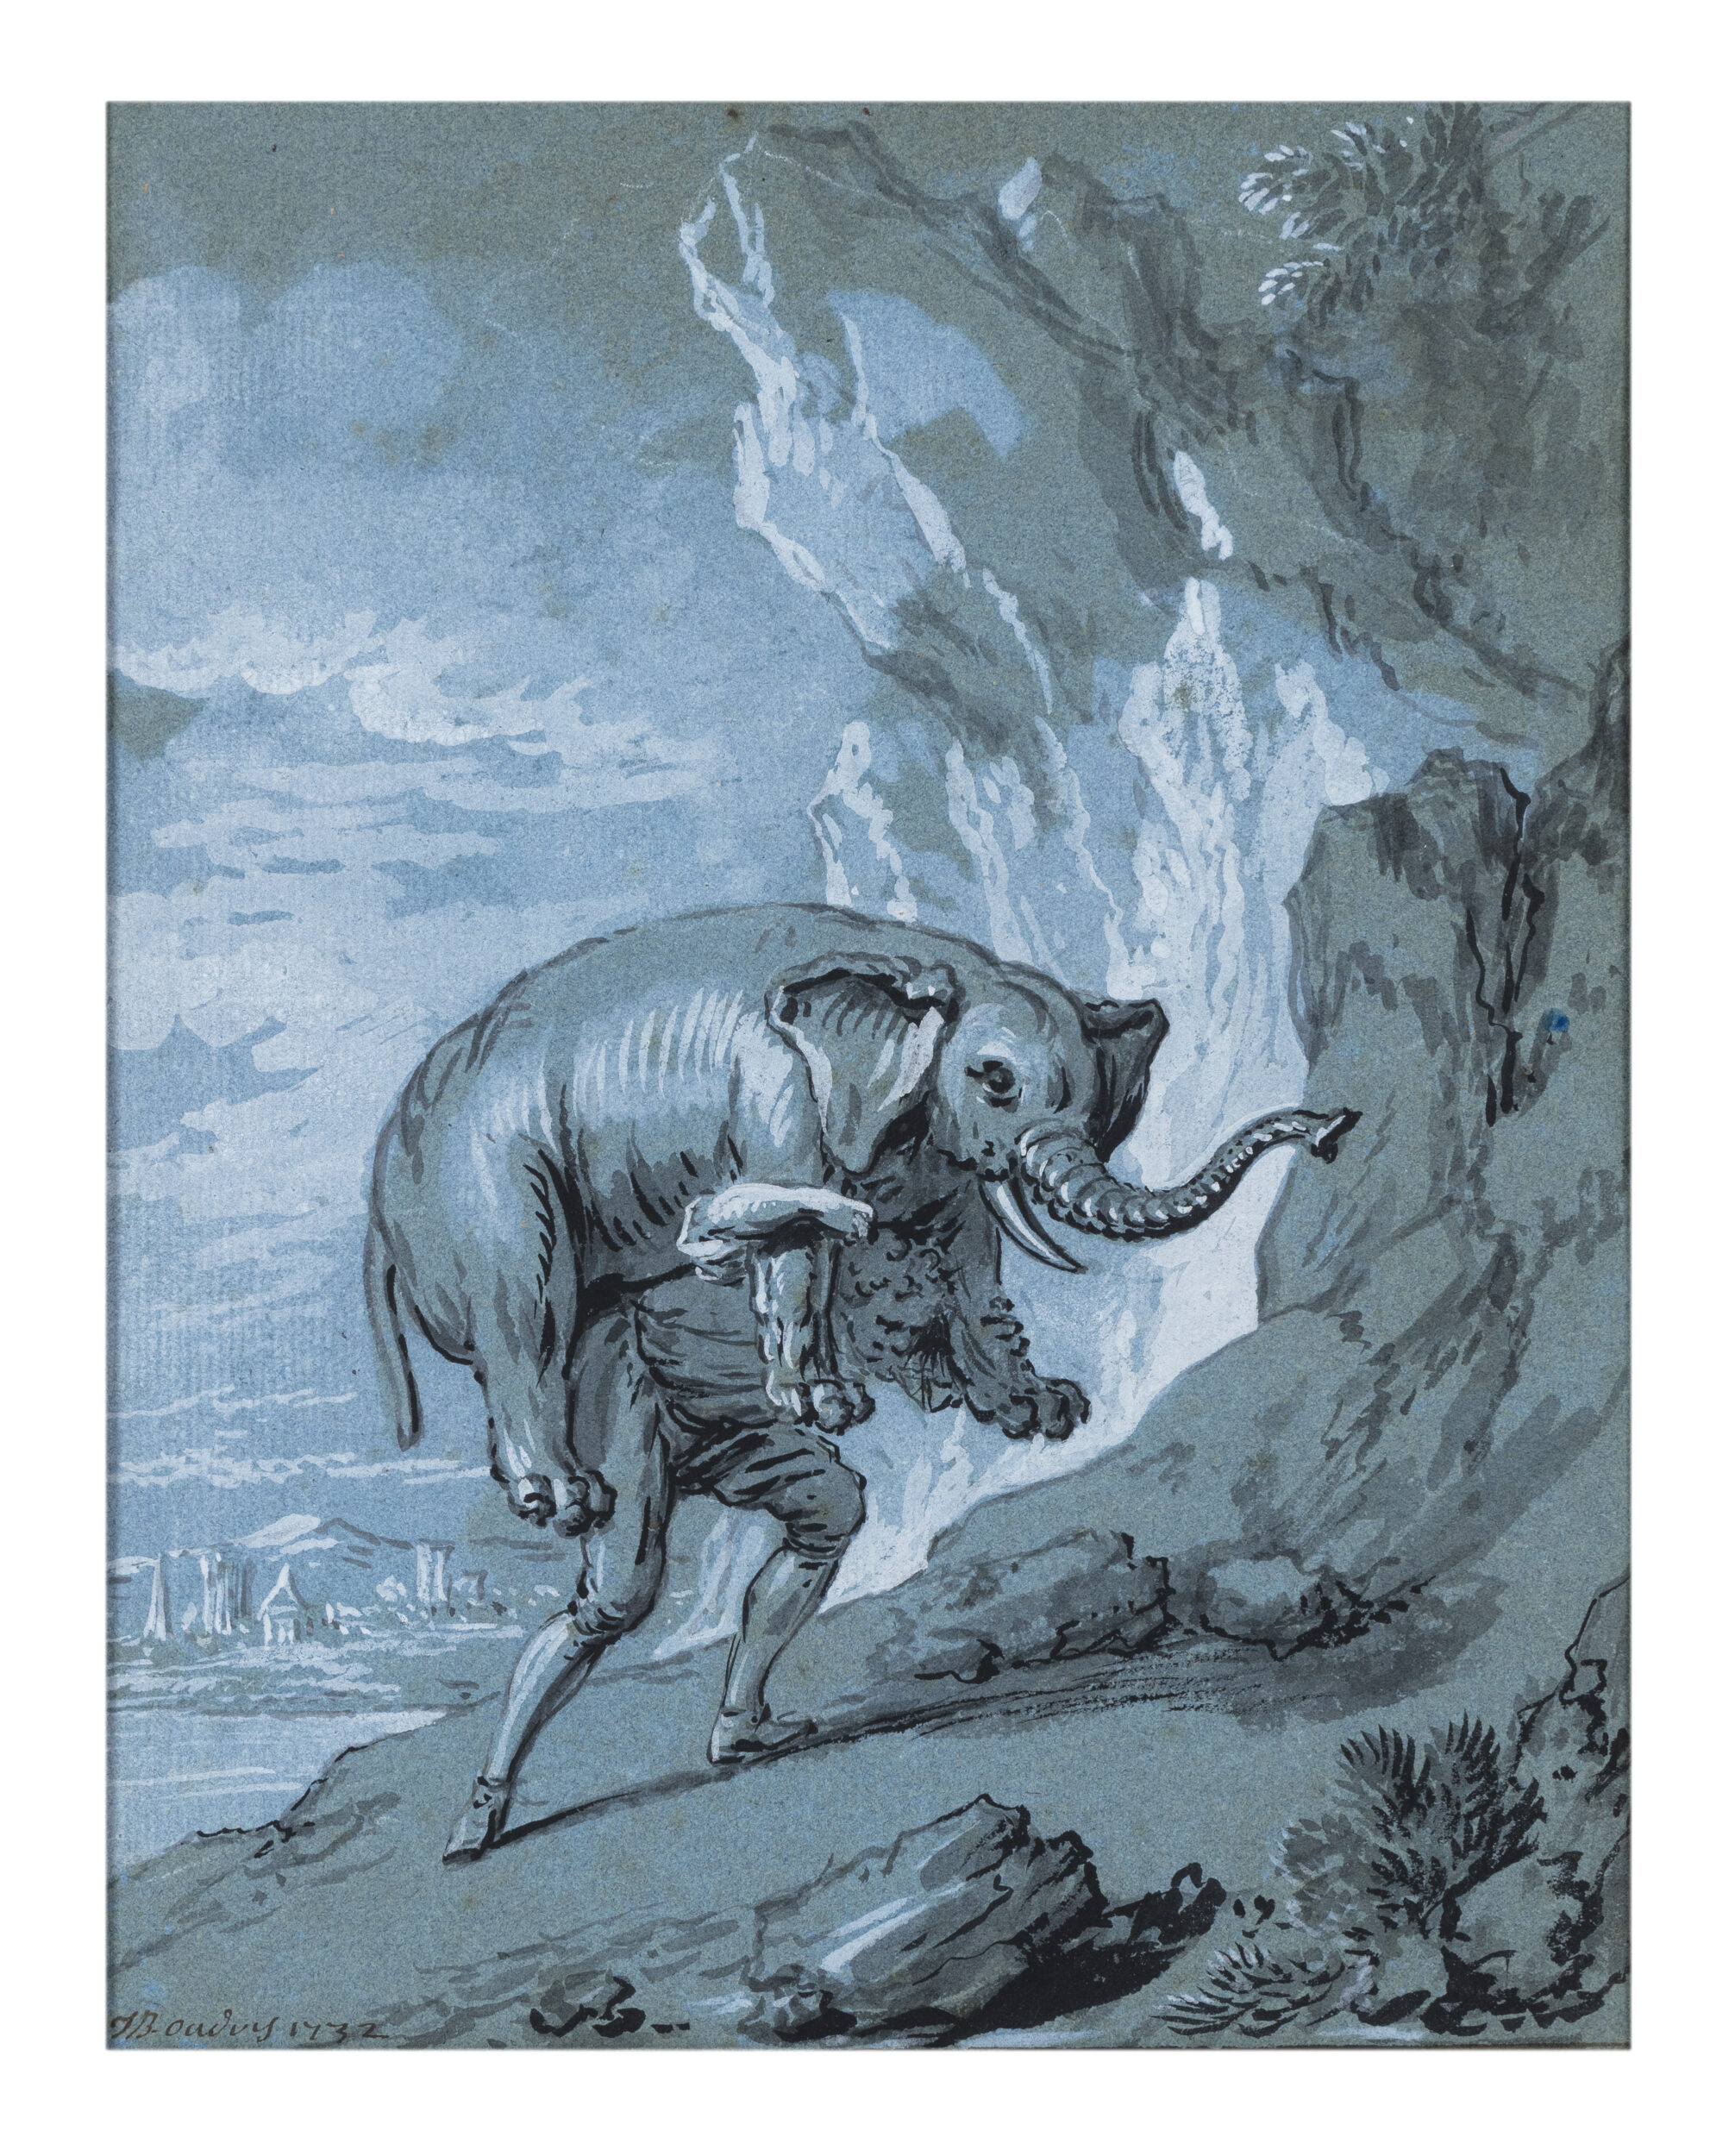 Jean-Baptiste Oudry, Illustration pour la fable « Les deux aventuriers et le Talisman » de Jean de La Fontaine, 1732, pinceau, encre noire, lavis gris, rehauts de gouache blanche avec une bordure à l’encre bleue sur papier bleu, 31 x 26 cm, collection particulière